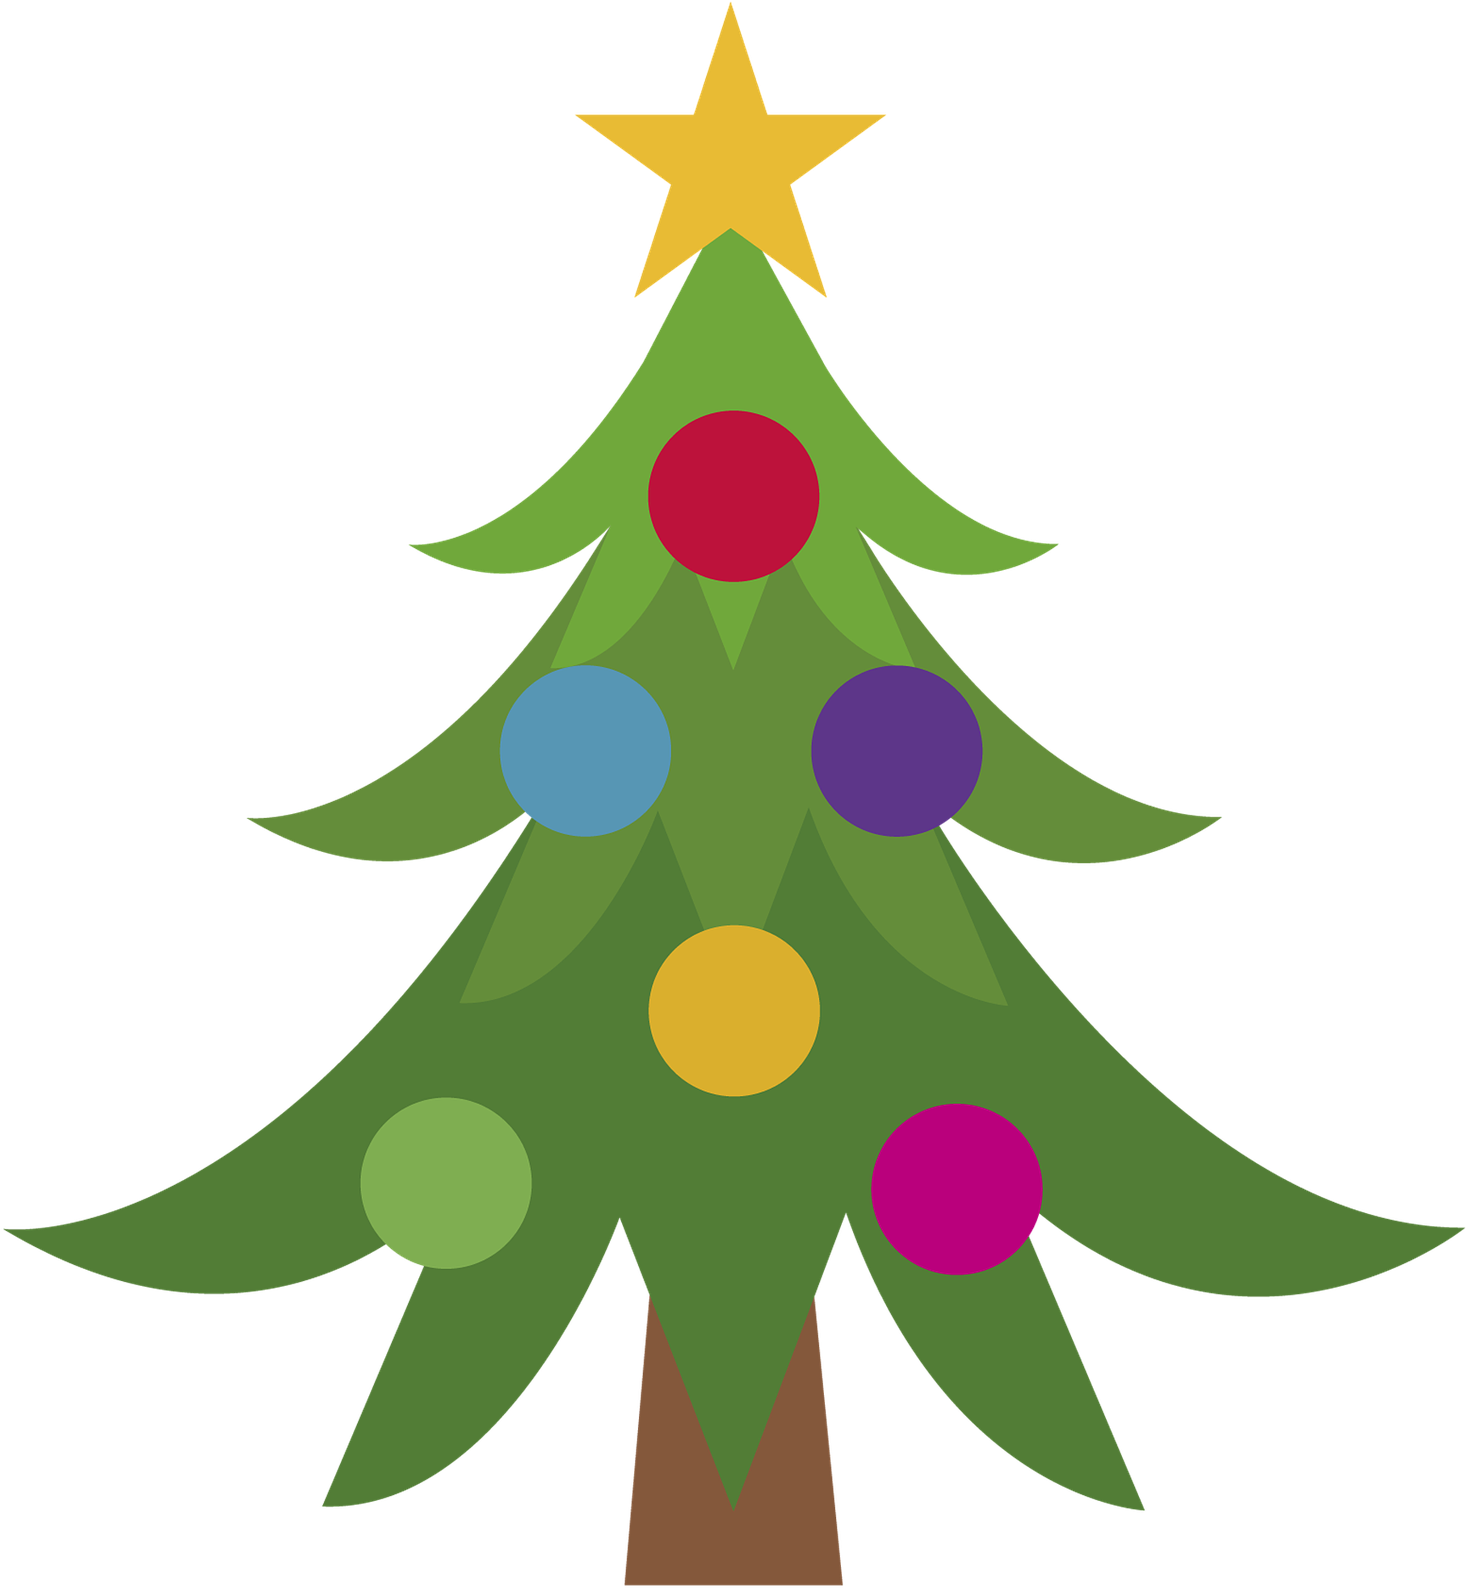 Tree Lighting Ceremony Clock Tower Park - Christmas Tree Emoji (1483x1920)